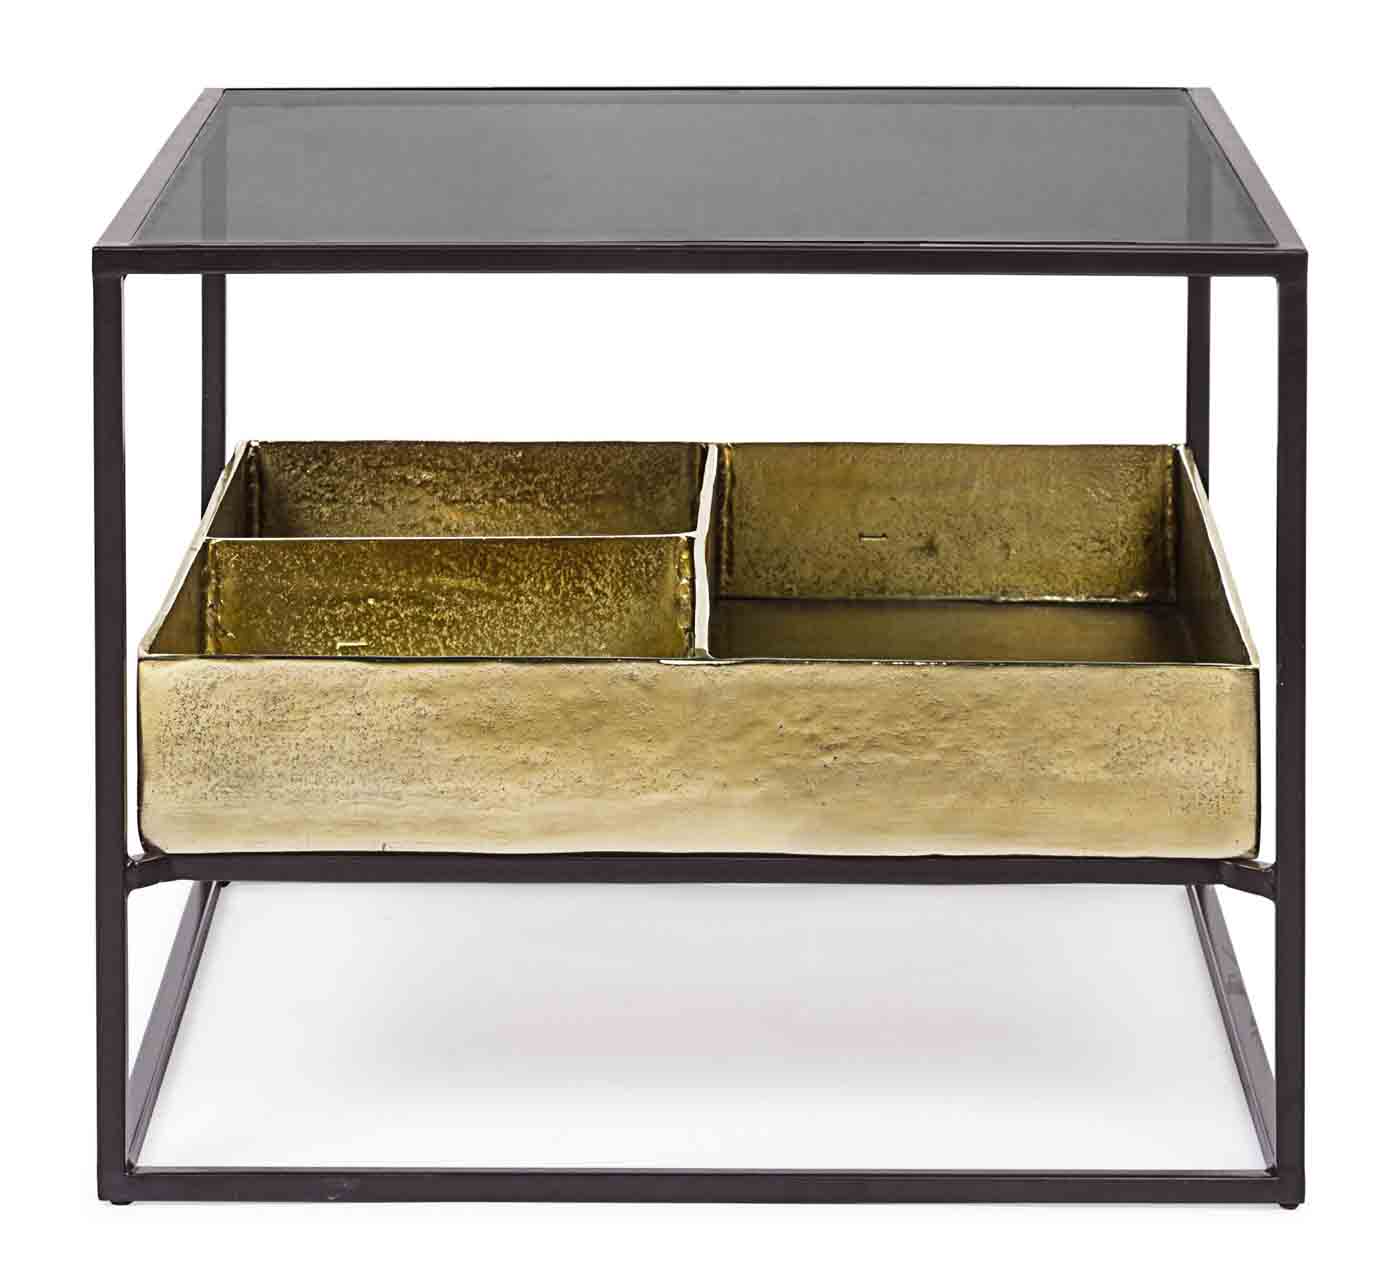 Stilvoller Beistelltischtisch Mavila verfügt über ein Stahlgestell, die Oberfläche ist aus Glas und der Tisch besitzt eine Unterplatte welche vergoldet wurde.